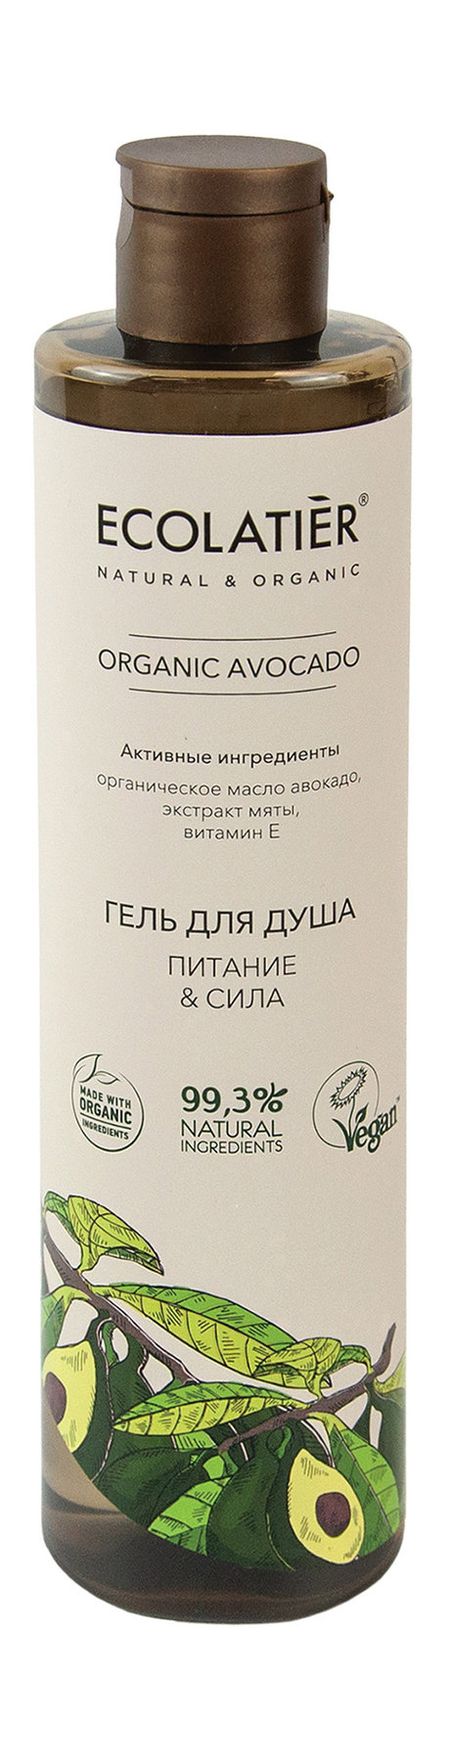 ecolatier organic avocado гель для душа питание & сила